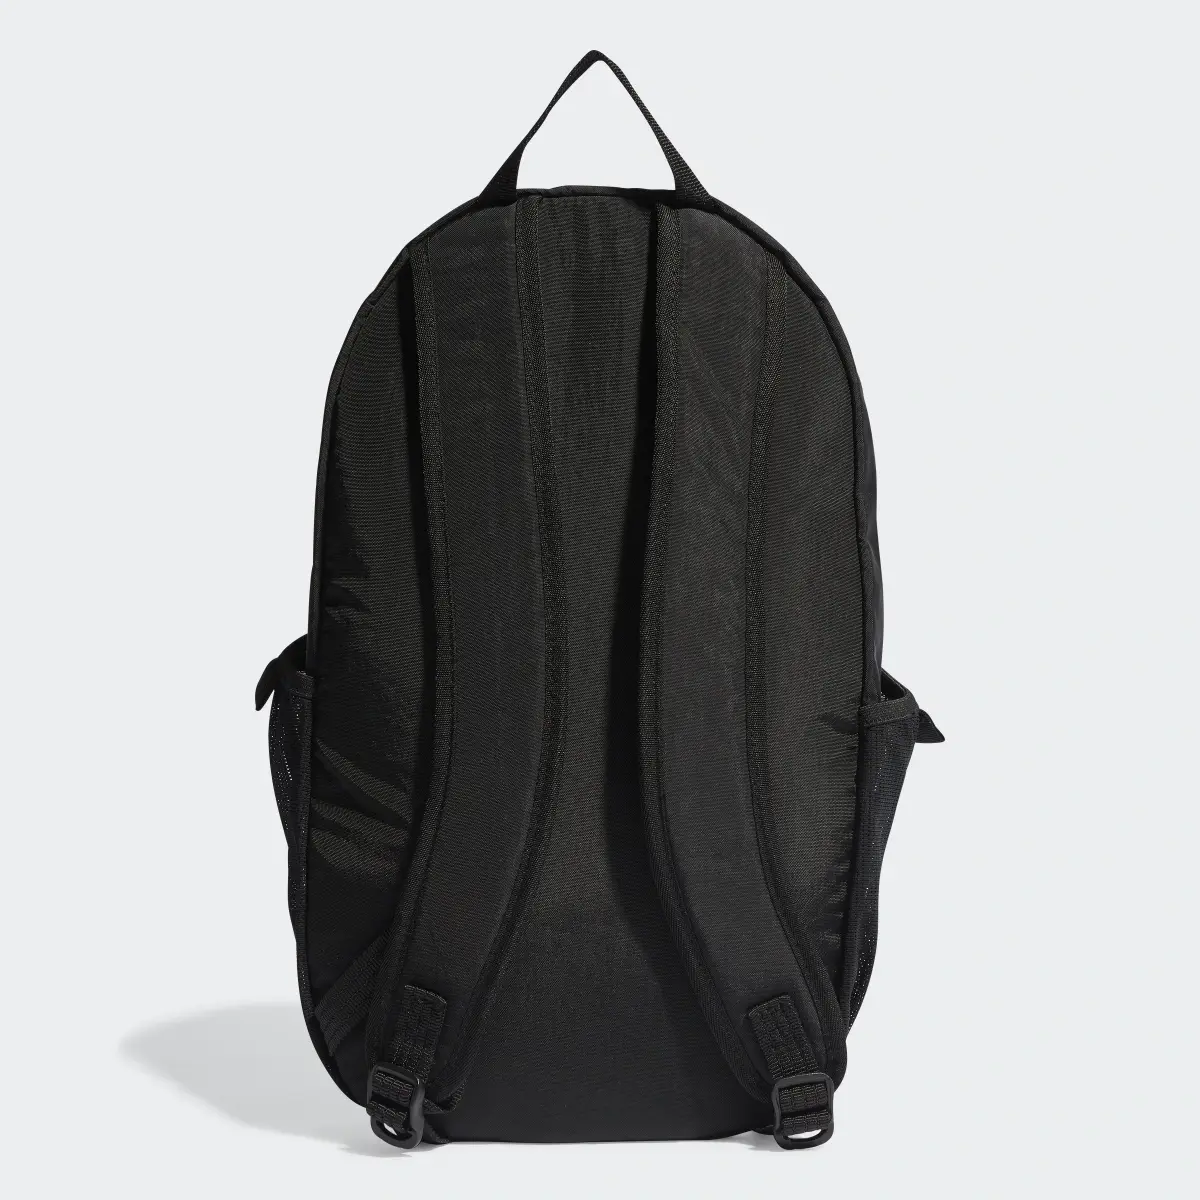 Adidas Adventure Backpack. 3